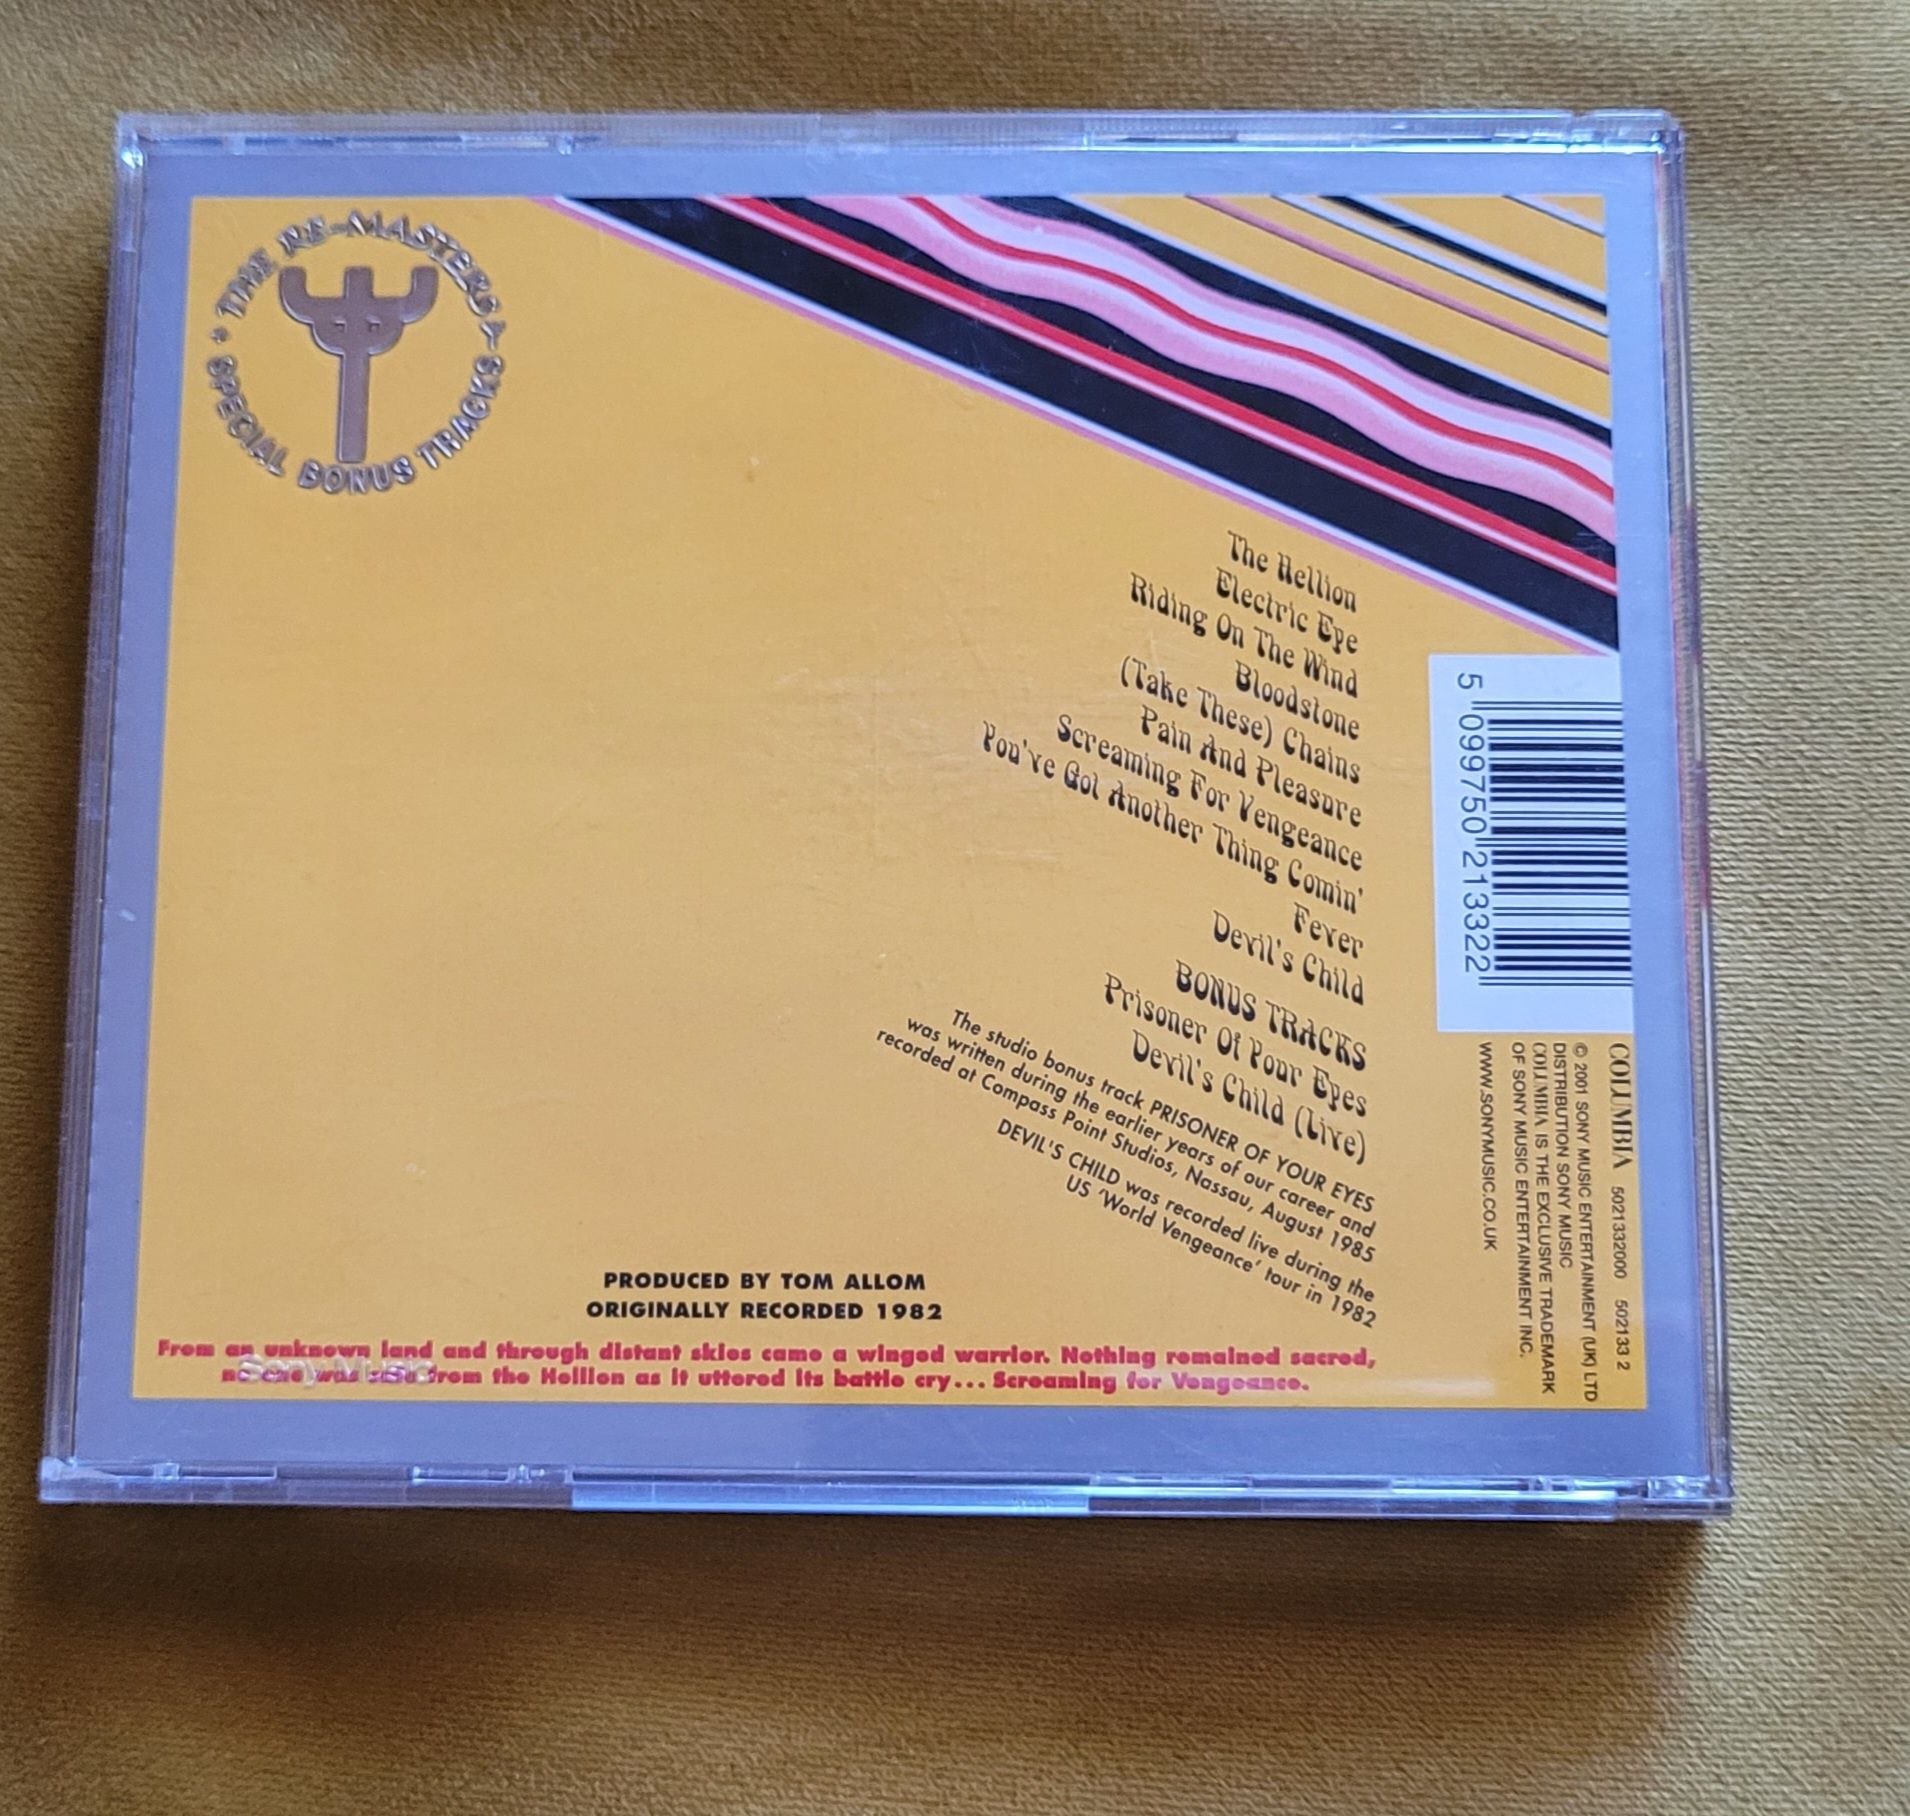 Judas Priest - Screaming for Vengeance CD